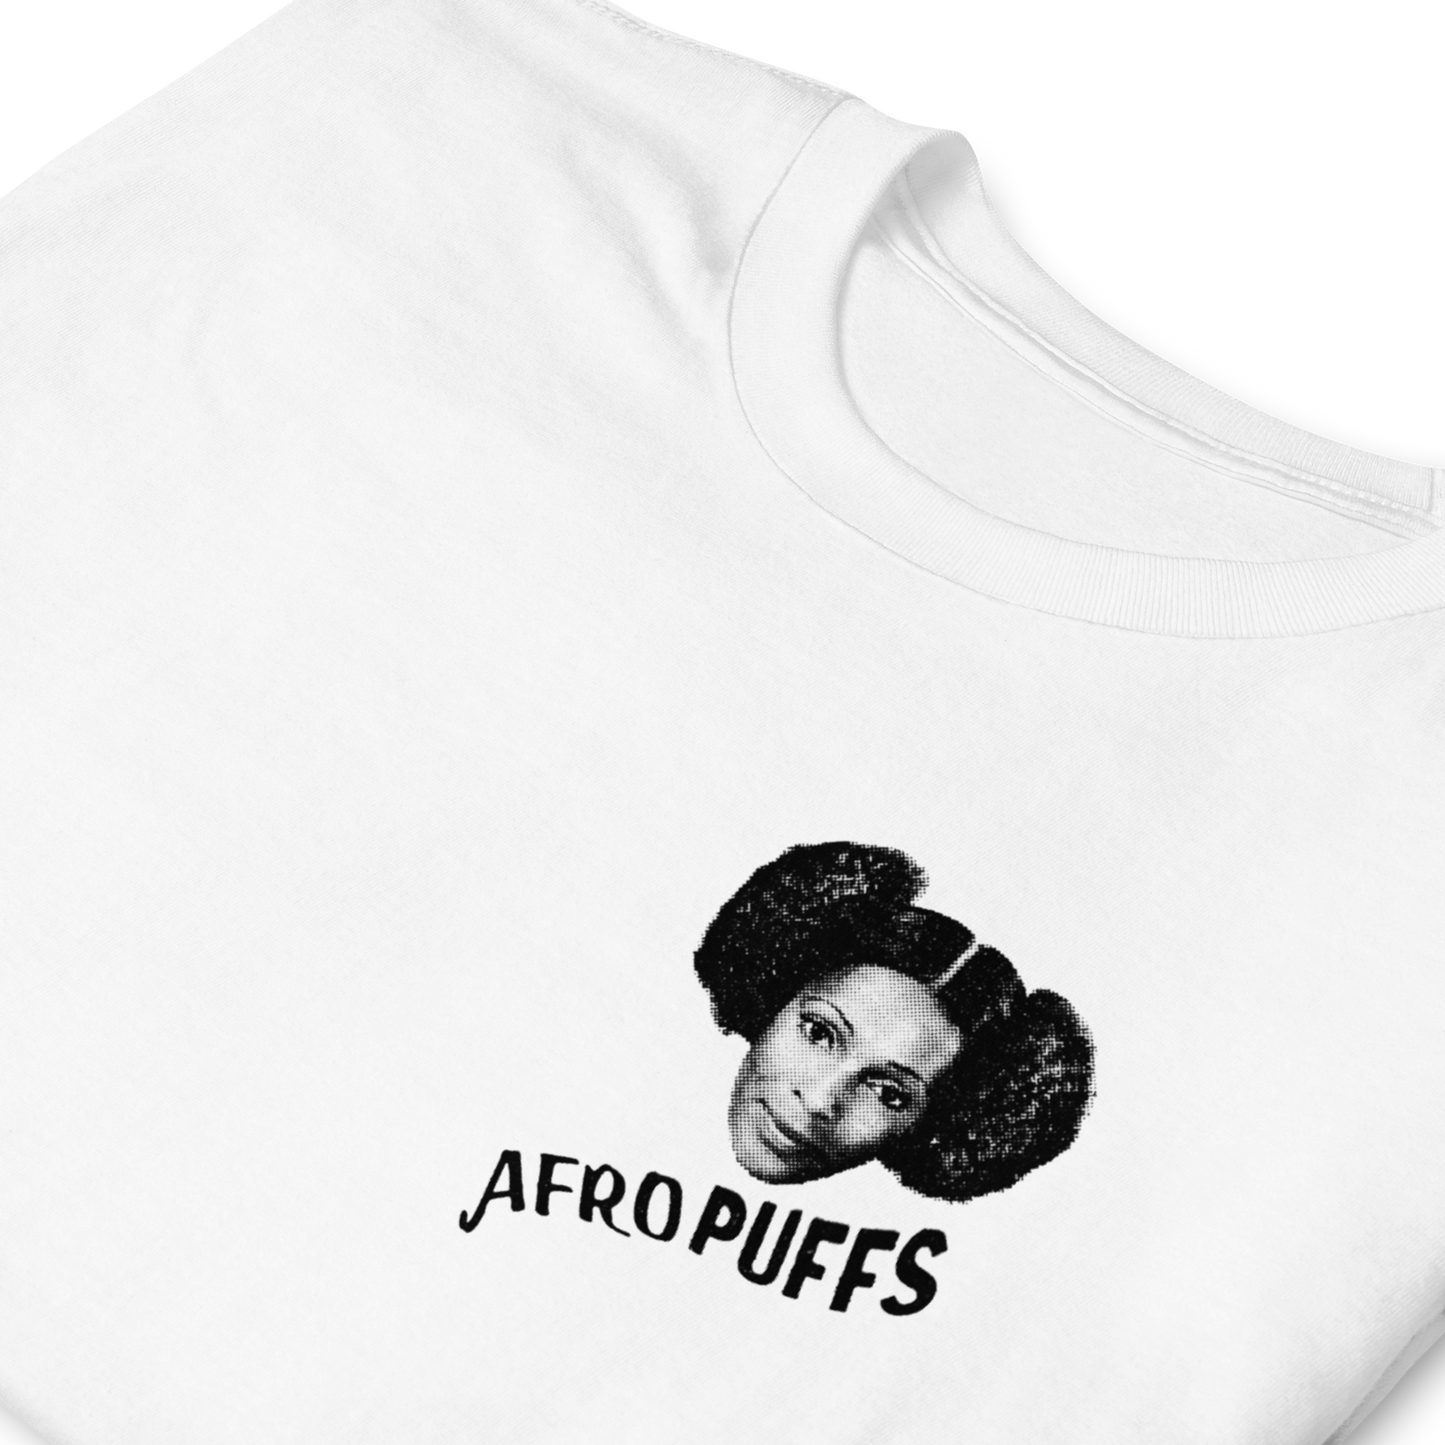 Afro Puffs T-Shirt